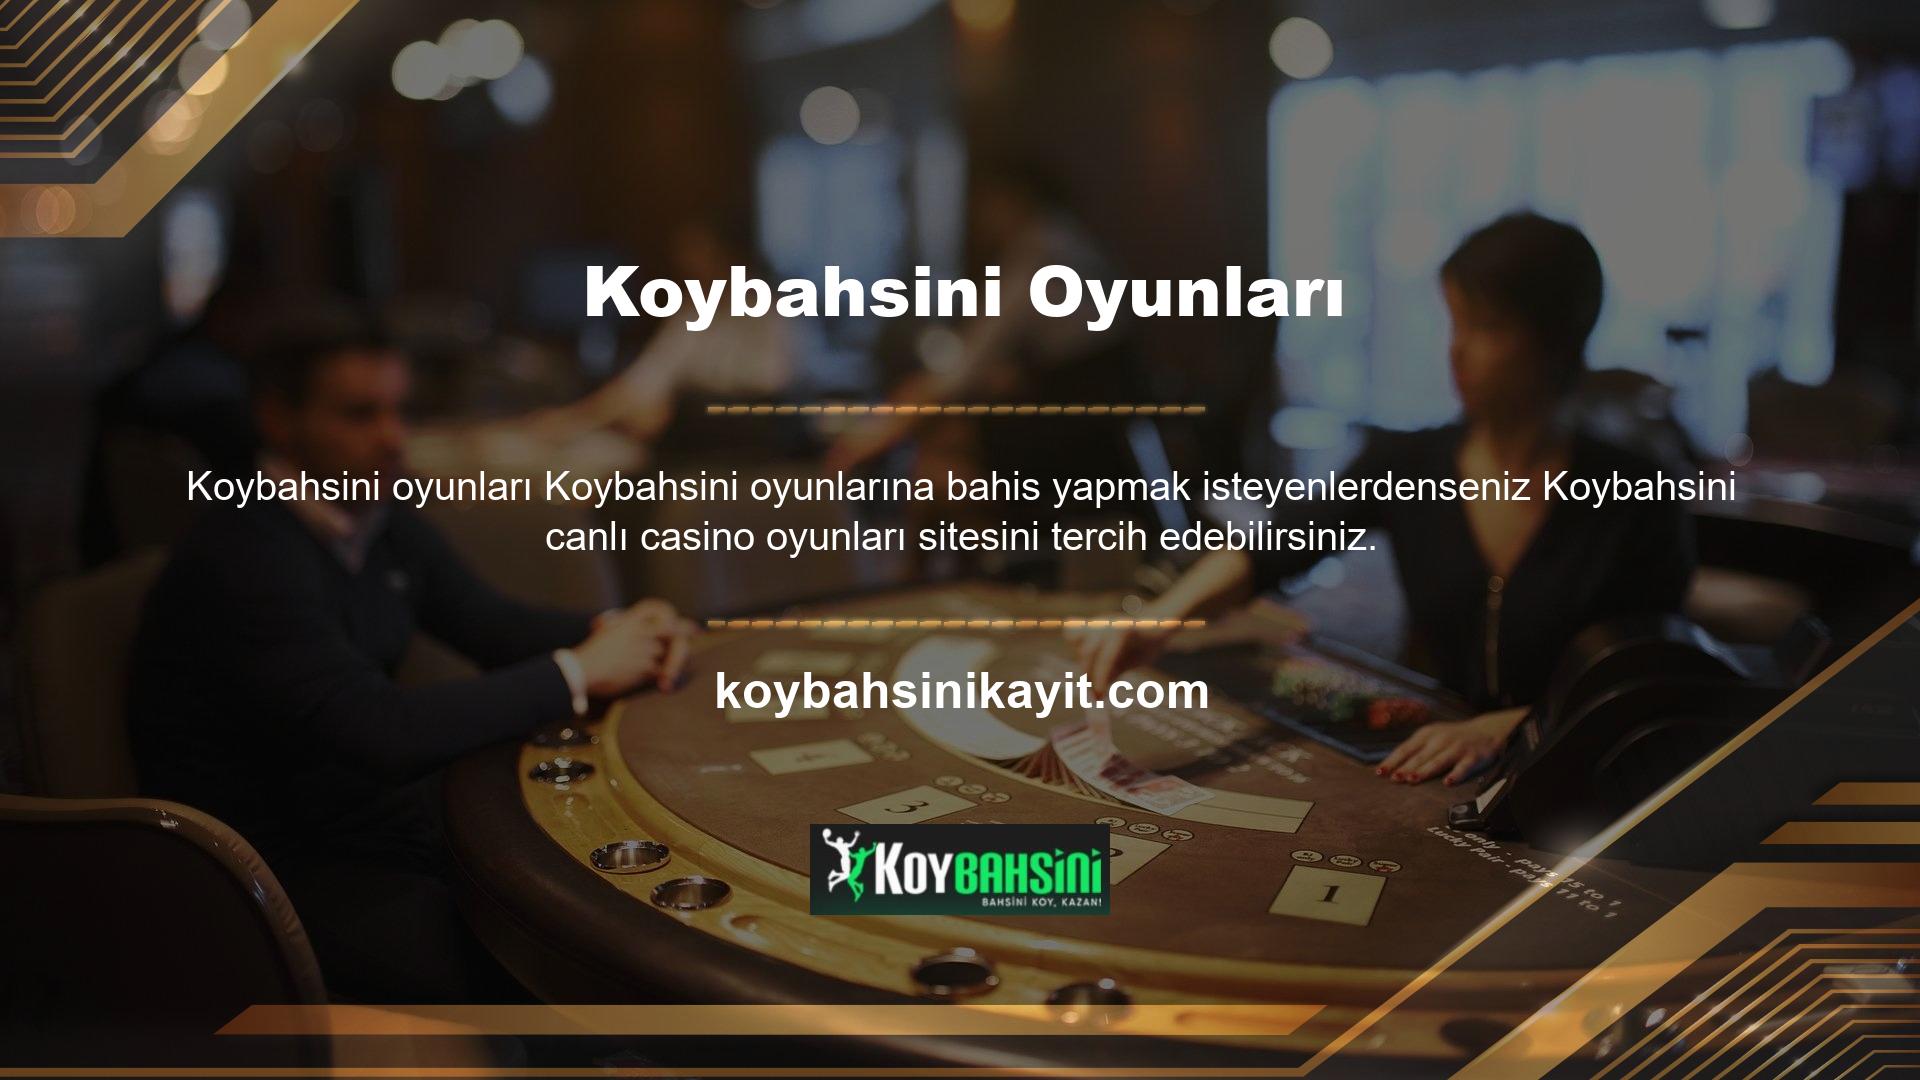 Koybahsini web sitesi sizin için doğru seçim olabilir